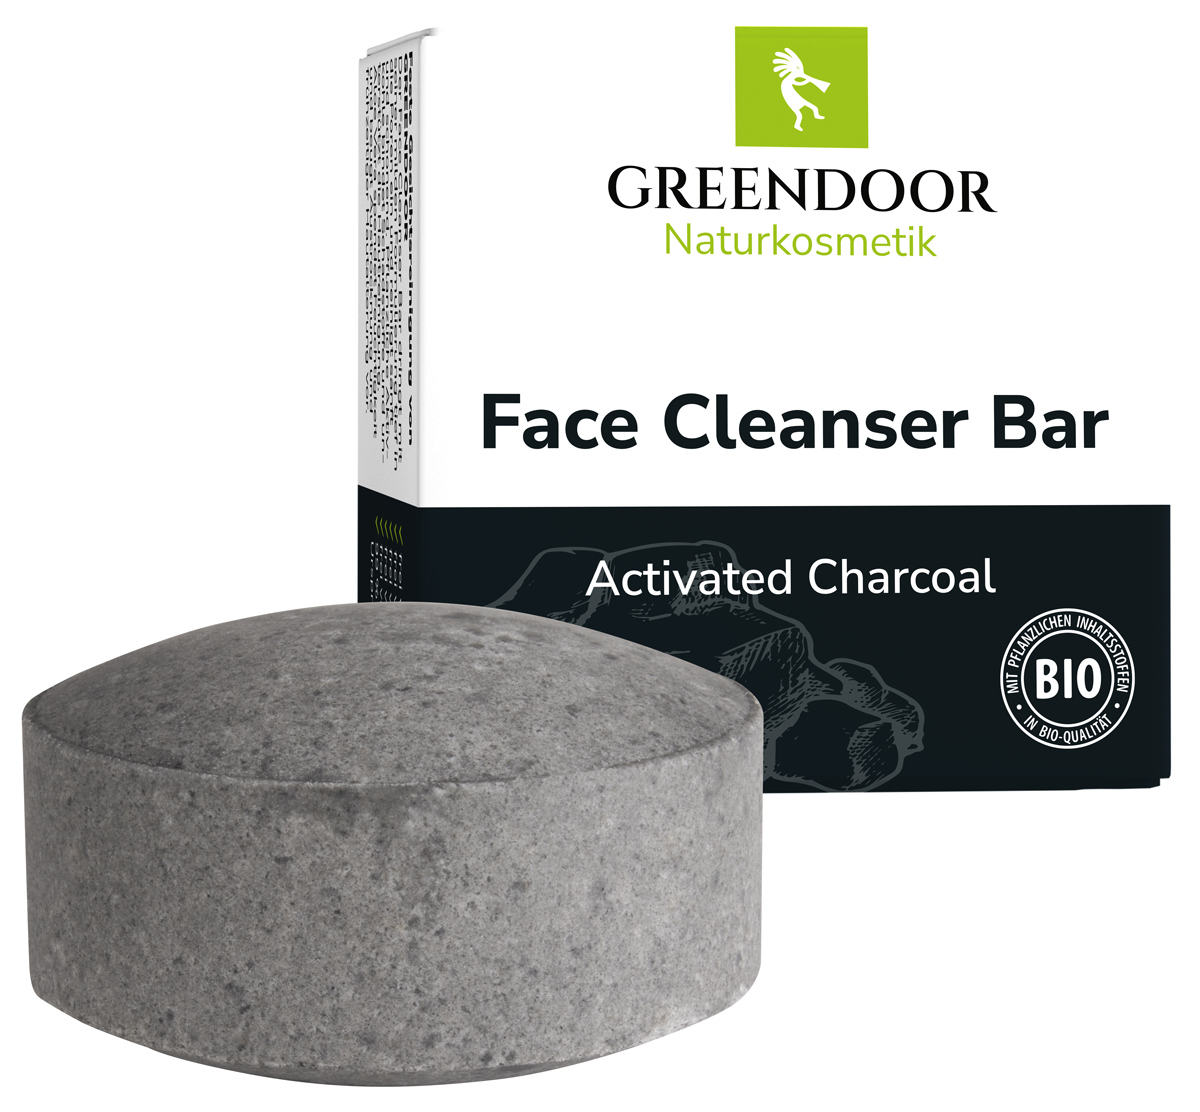 Face Cleanser Bar Activated Charcoal, mit Aktivkohle, seifenfreie Gesichtsreinigung 57g